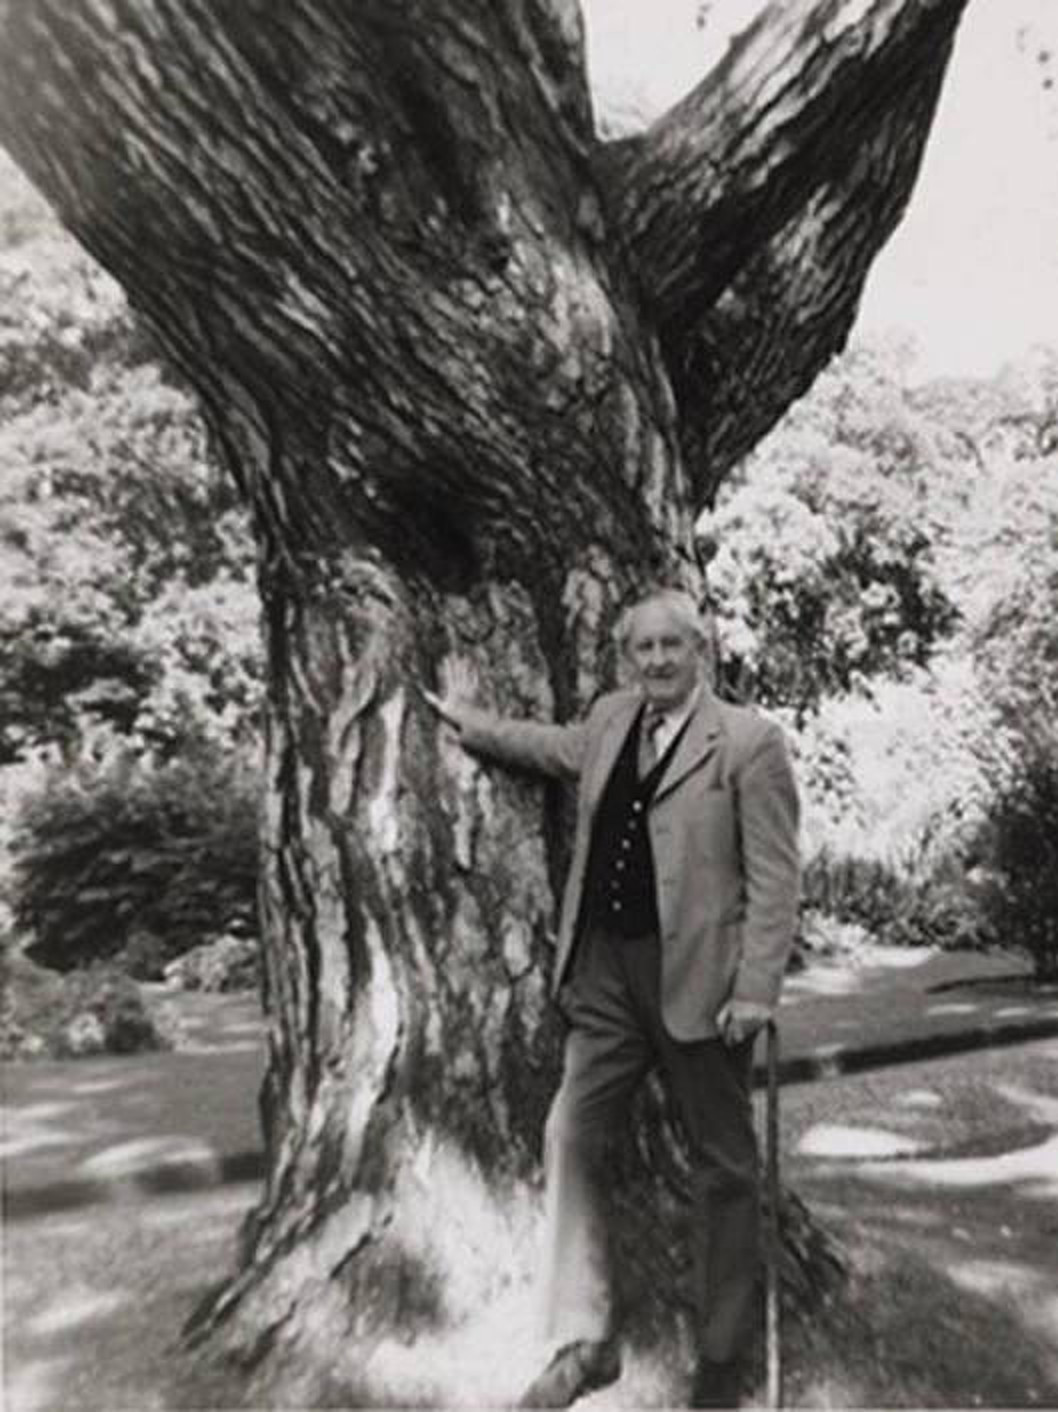 Tolkien at Oxford Botanical Garden / source unknown